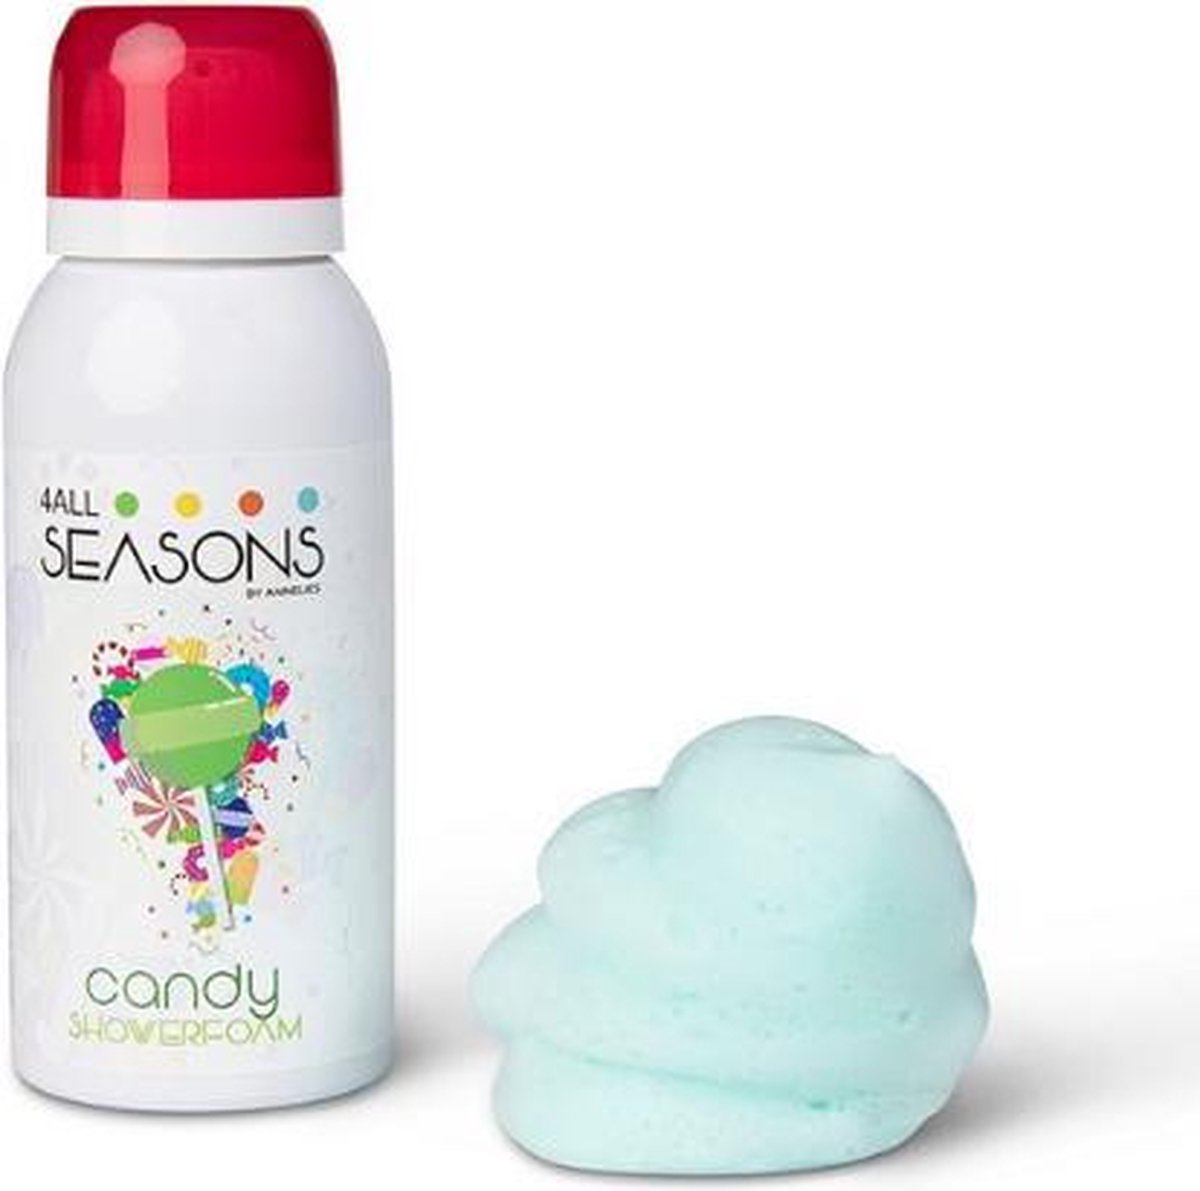 4All Seasons - Showerfoam - Candy